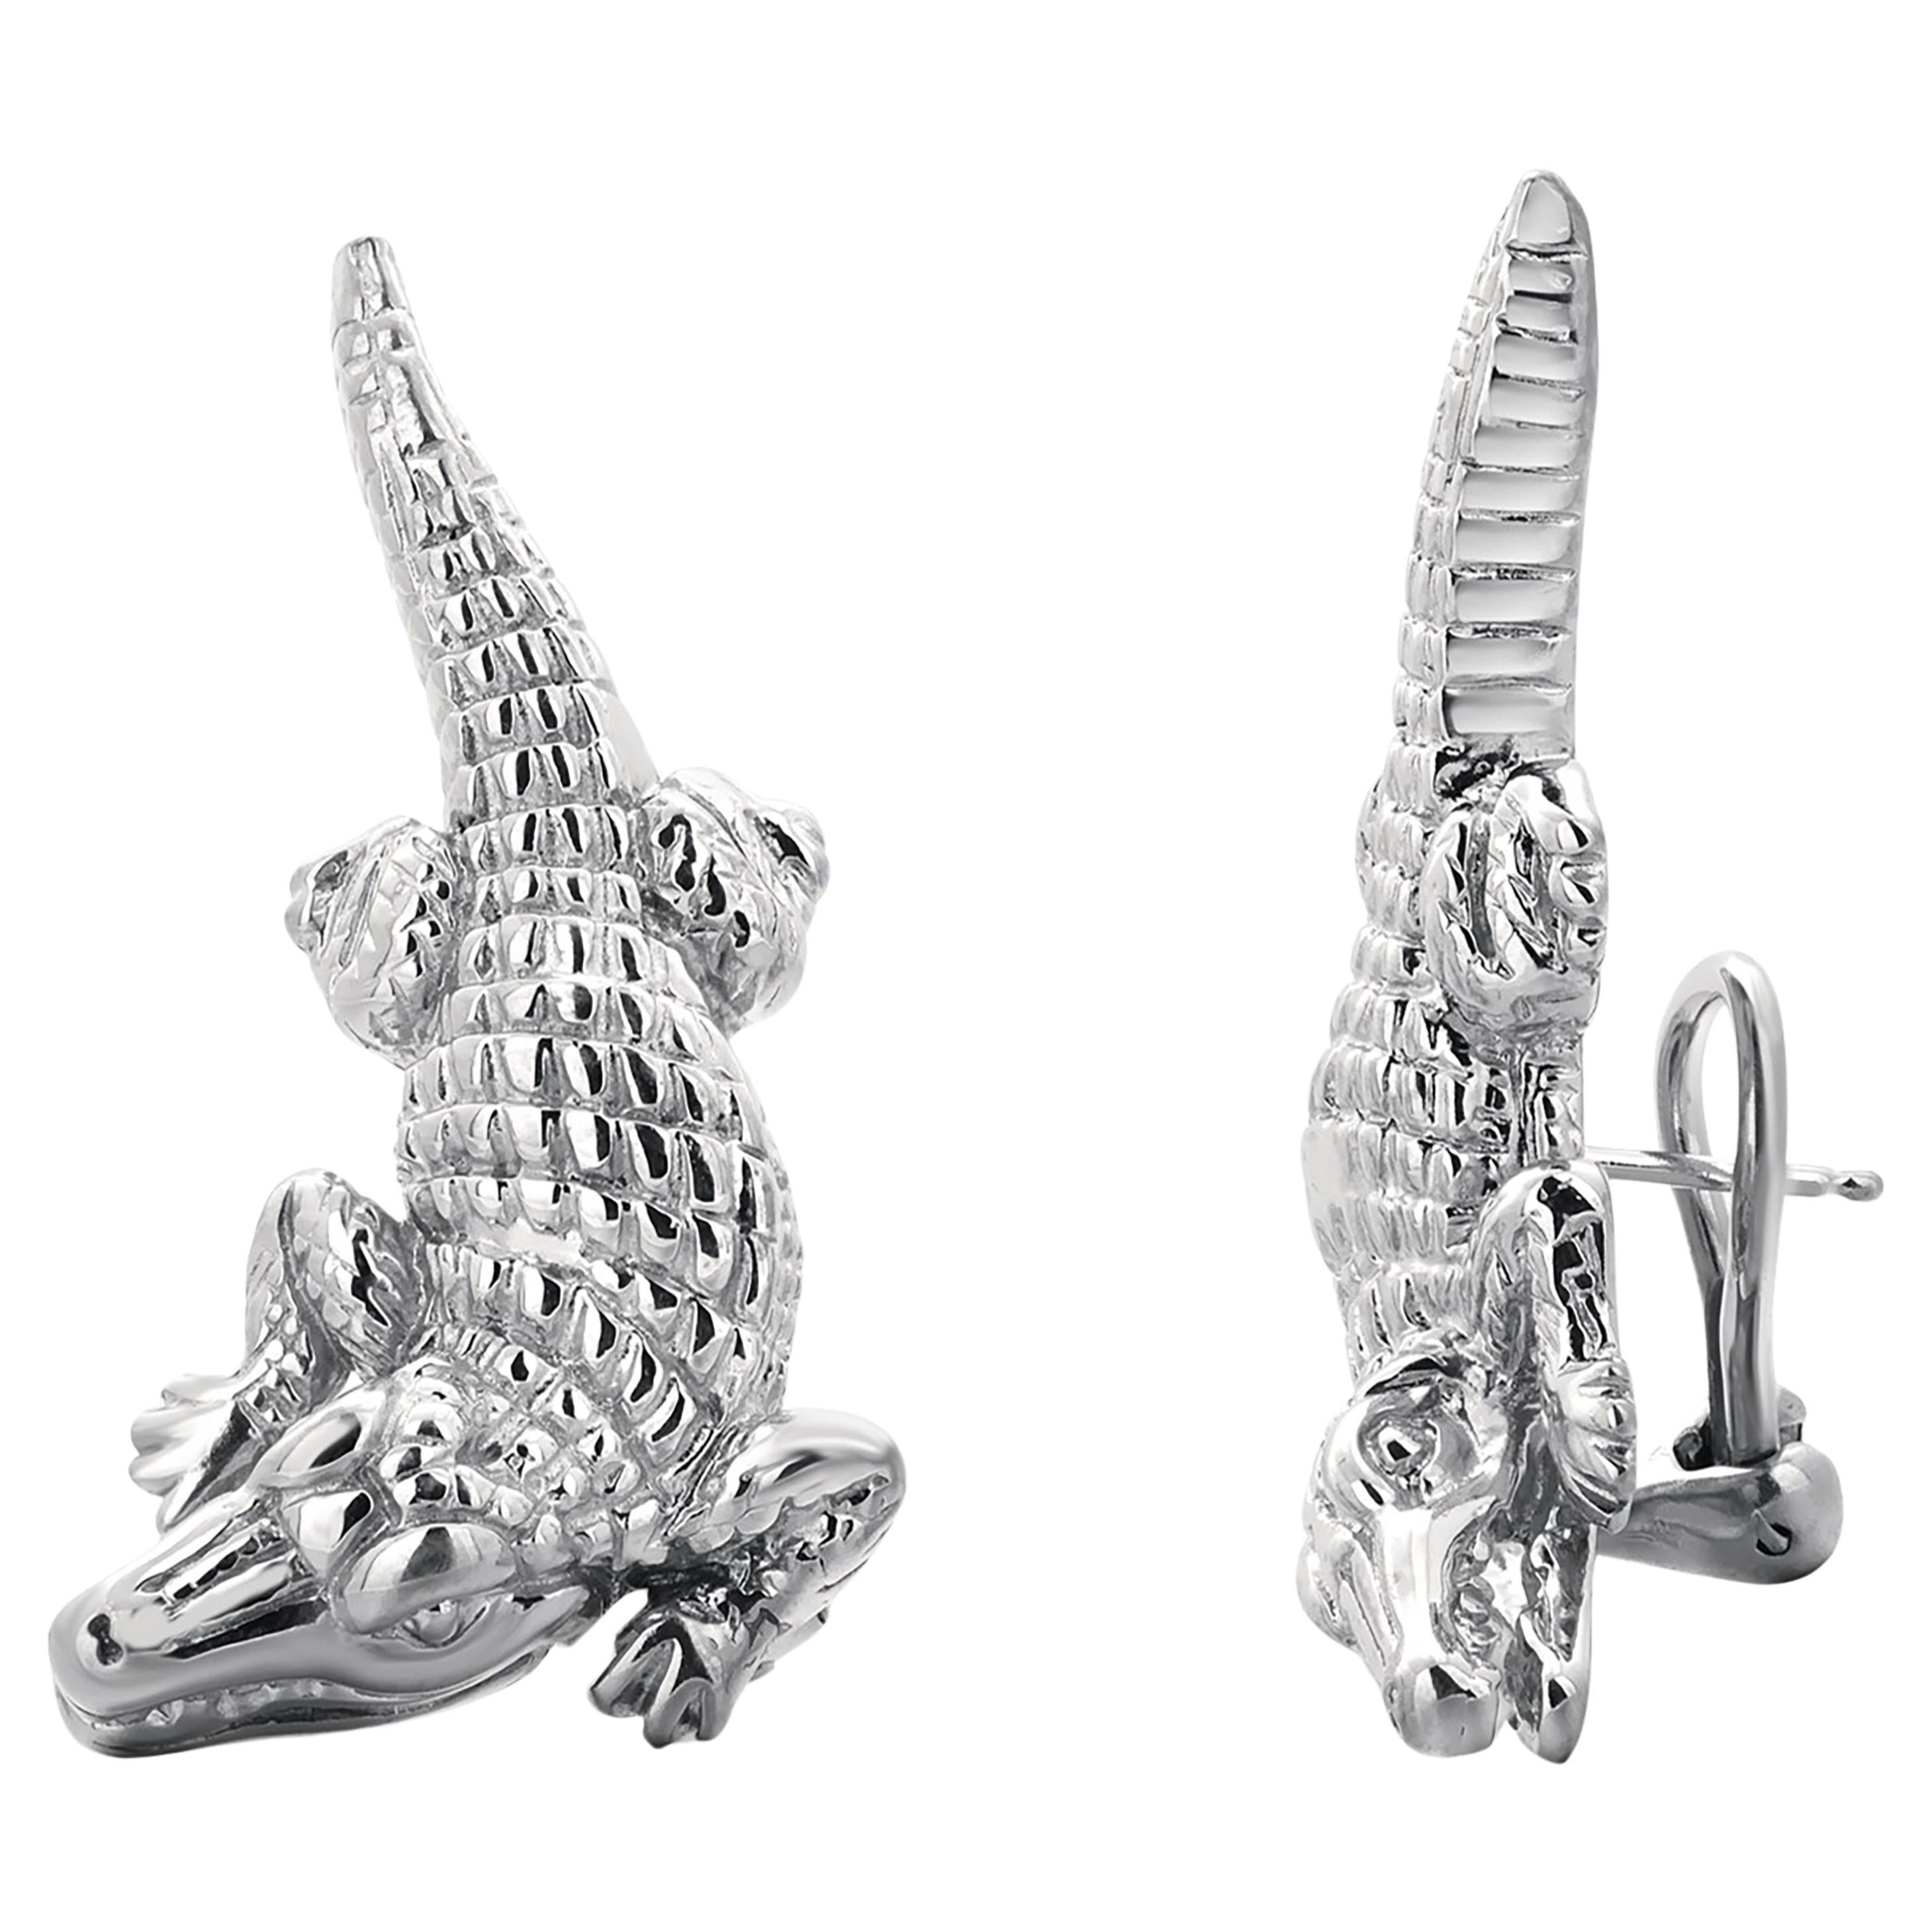 Barry Kieselstein-Cord Sterling Silver Alligator 1.5 Inch Long Earring